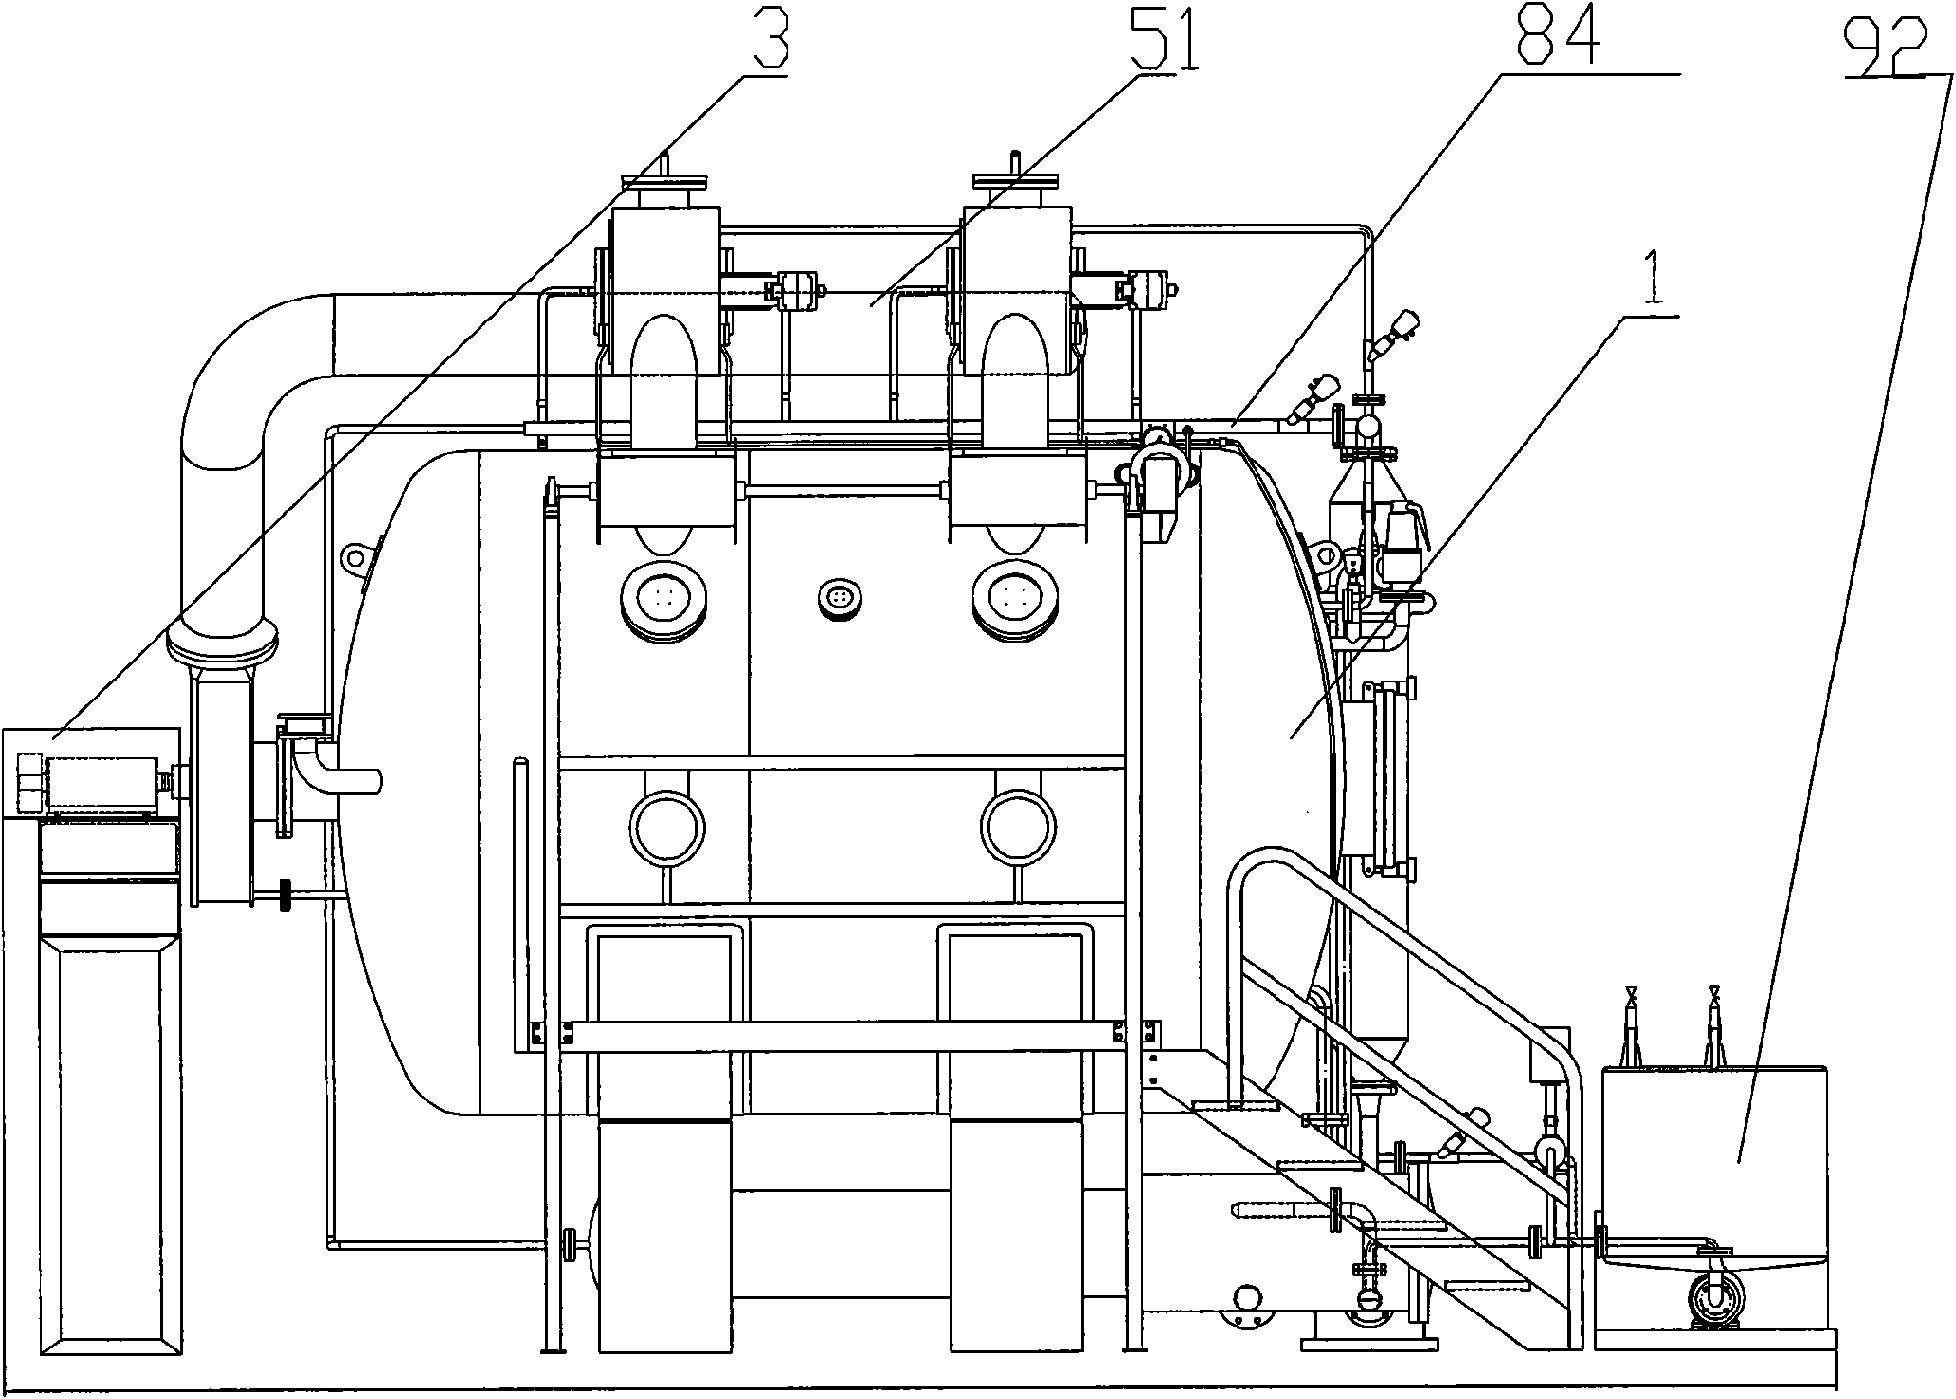 Novel gas-fog dyeing machine